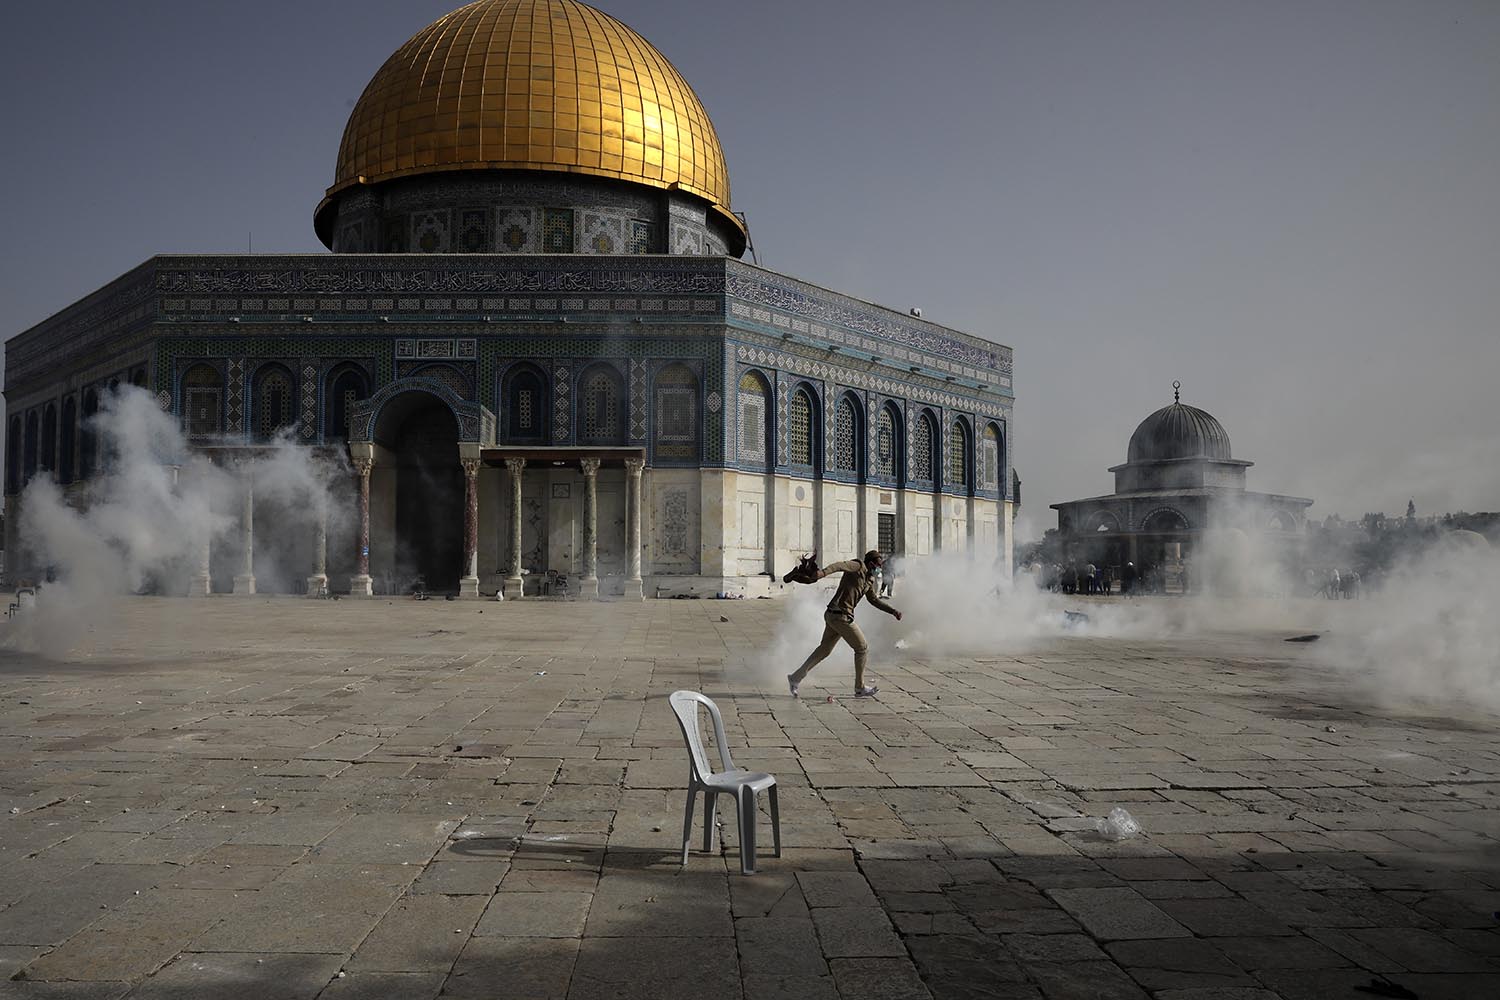 מתחם הר הבית במהלך התגשויות בין פלסטינים וכוחות הביטחון, 10 במאי 2021. "צריך להבין מה המשמעות של אל-אקצא למוסלמים. זה מקדס, ממש אותו השם של בית המקדש שמופיע בתנ"ך" (צילום: מחמוד איליאן/ AP Photo)